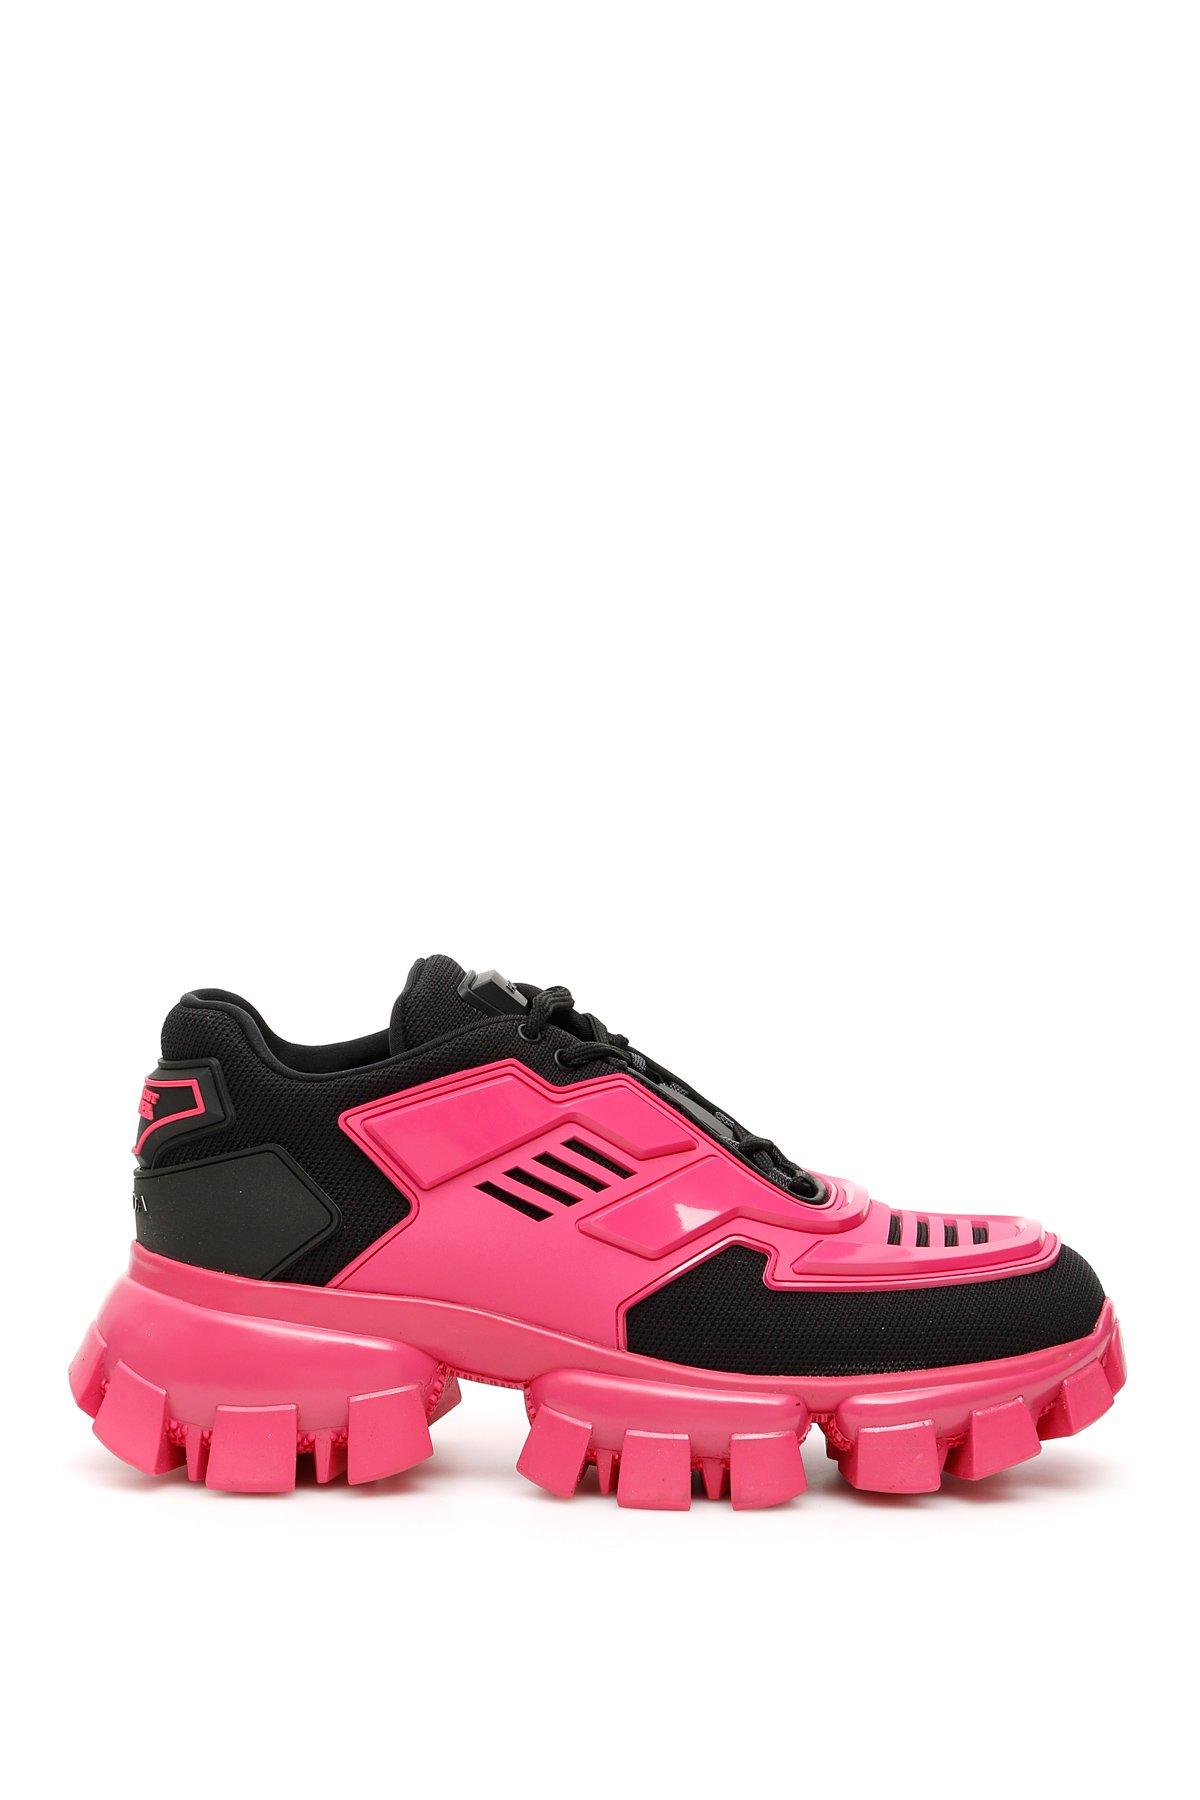 prada shoes pink